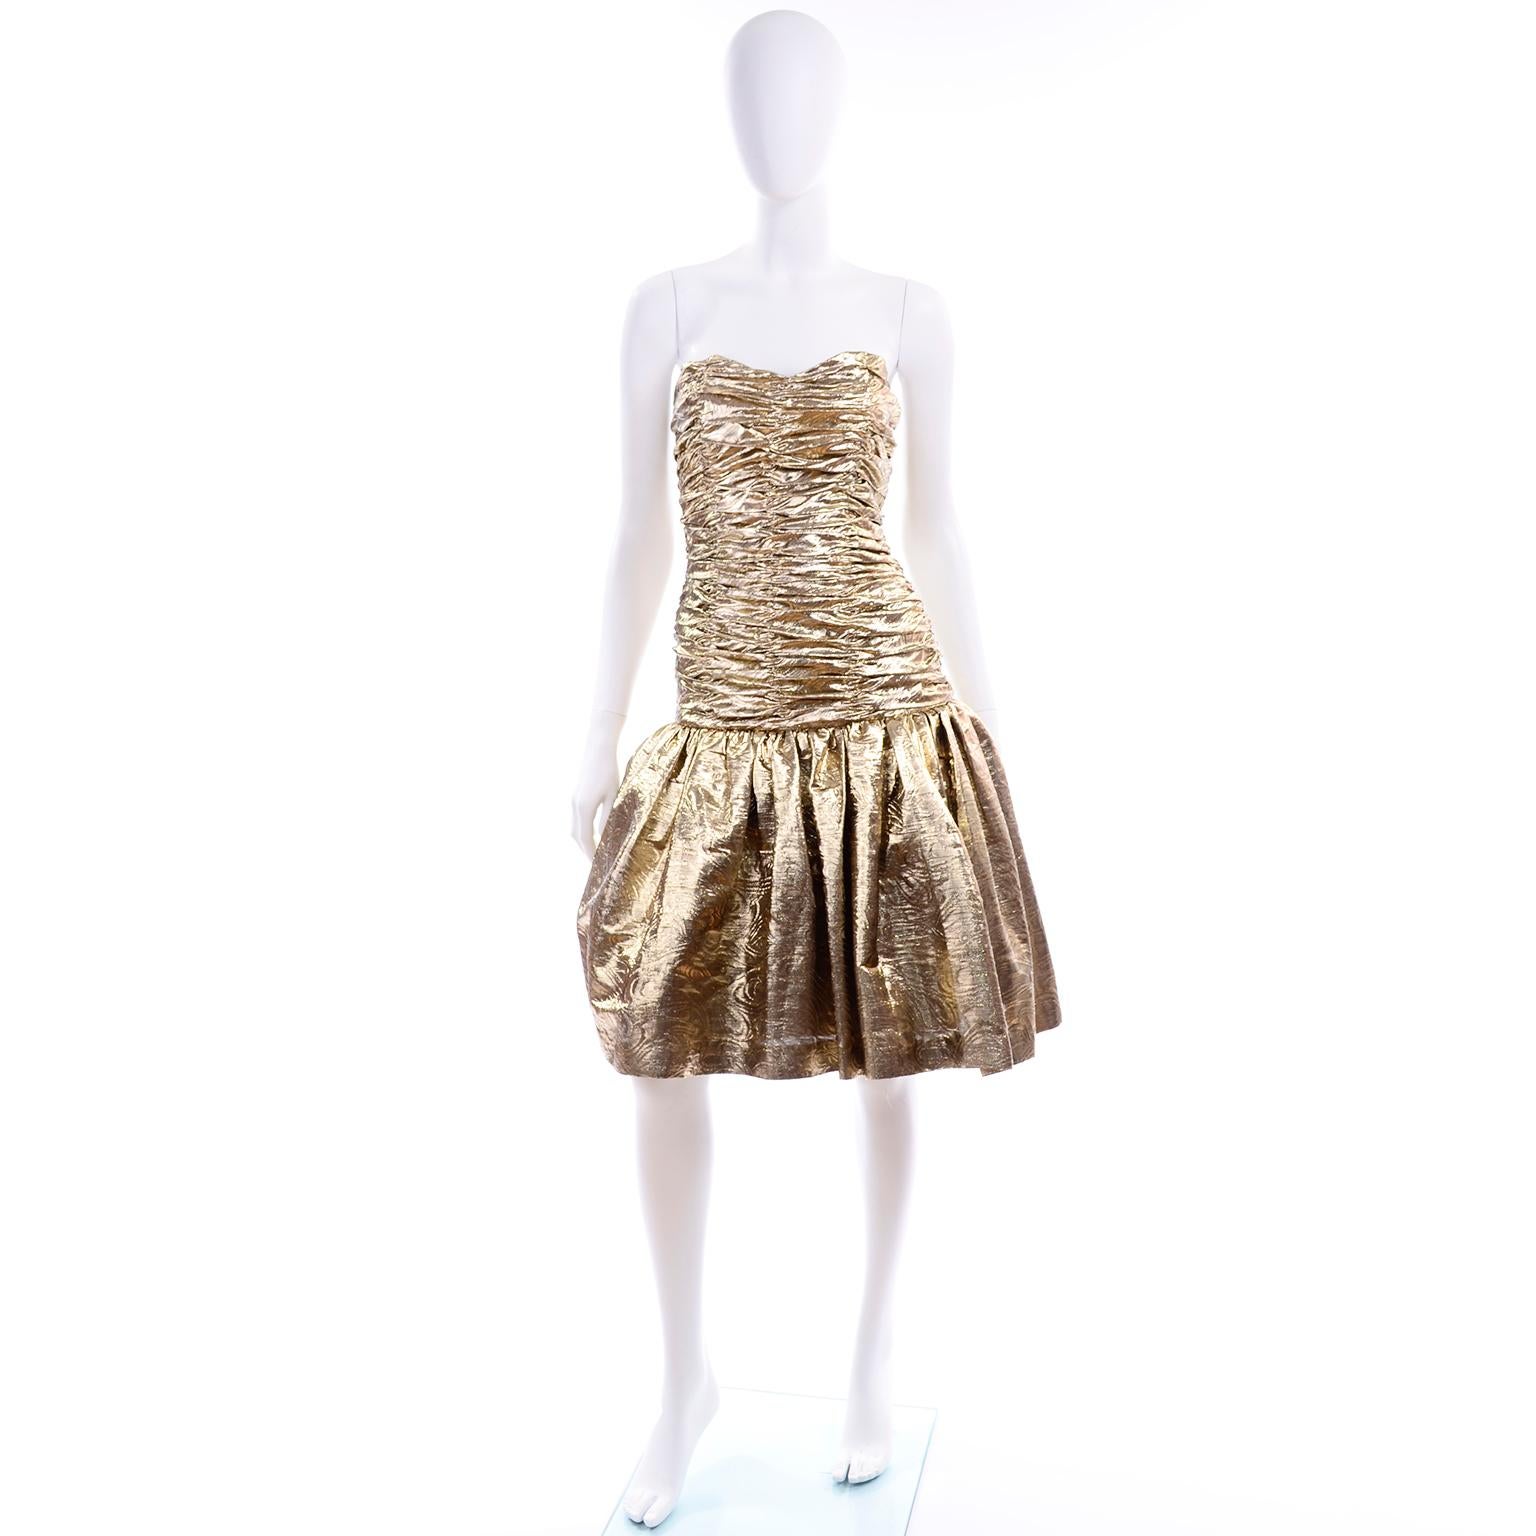 Dies ist eine lustige Vintage texturiert Gold Lurex trägerlosen Cocktail oder Party-Kleid aus den 1980er Jahren. Das Mieder mit fallender Taille ist vollständig gerüscht und der Rock ist mit einem Unterrock aus Tüll gefüttert, der für Fülle sorgt. 